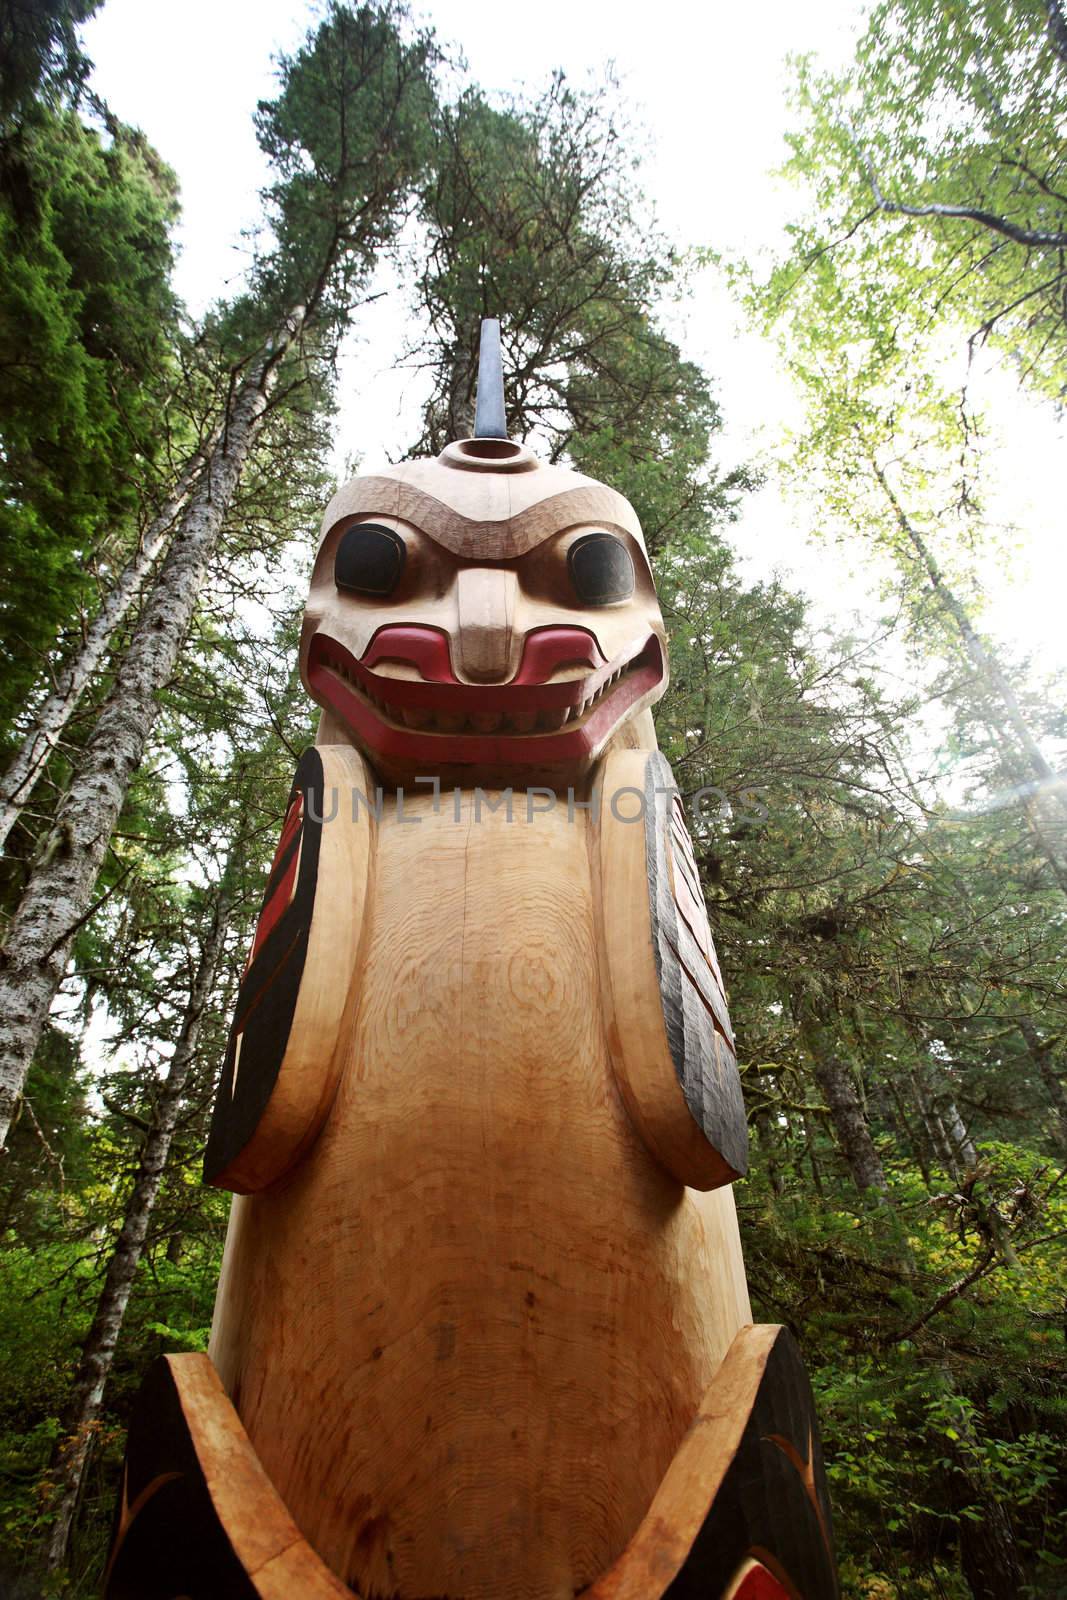 Totem pole at Kitsumkalum Provincial Park